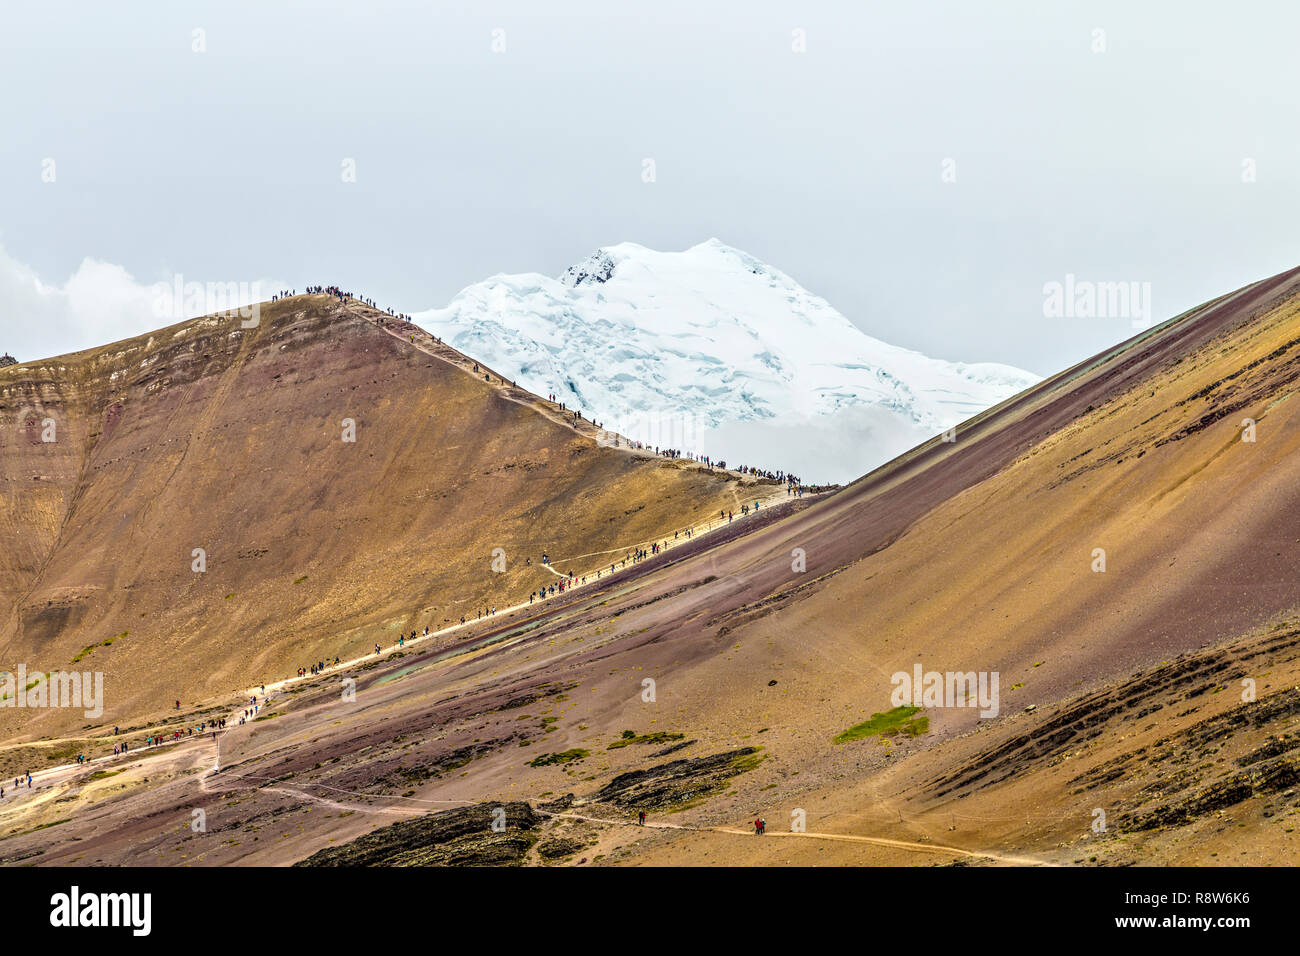 La gente de senderismo en la montaña de arco iris con el Ausangate glaciar en el fondo, Perú Foto de stock